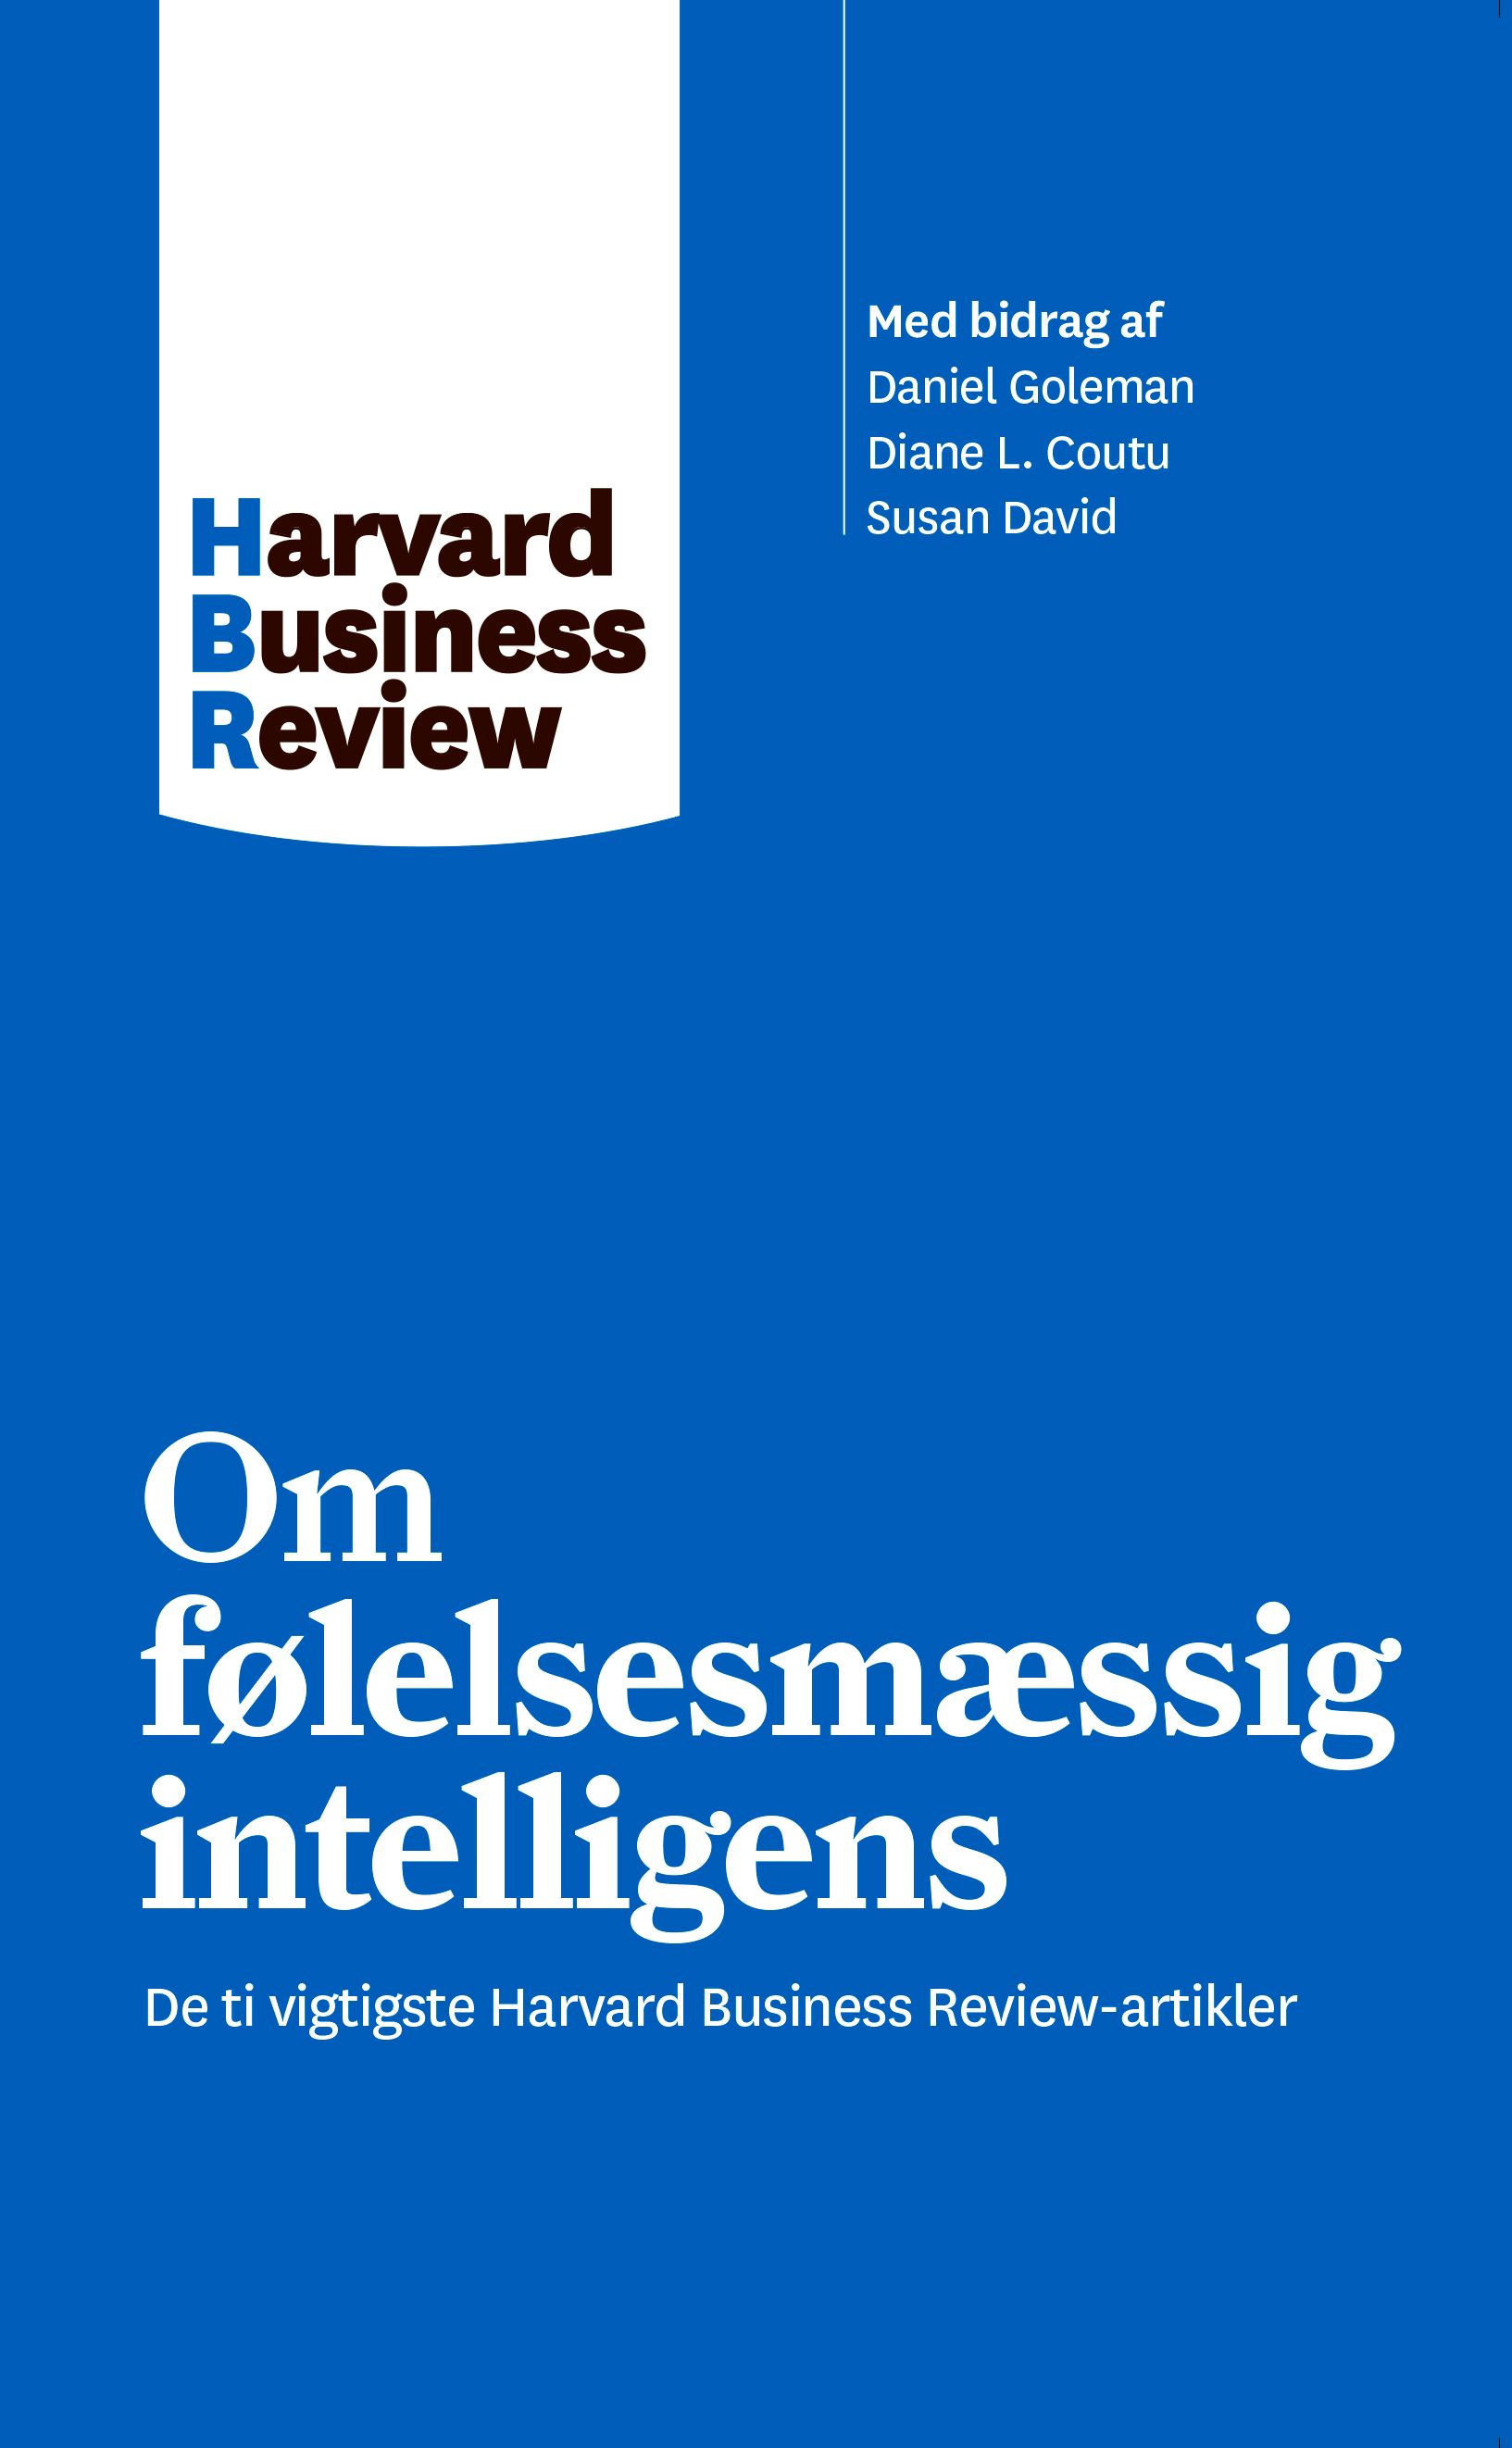 Om følelsesmæssig intelligens, e-bok av Harvard Business Review